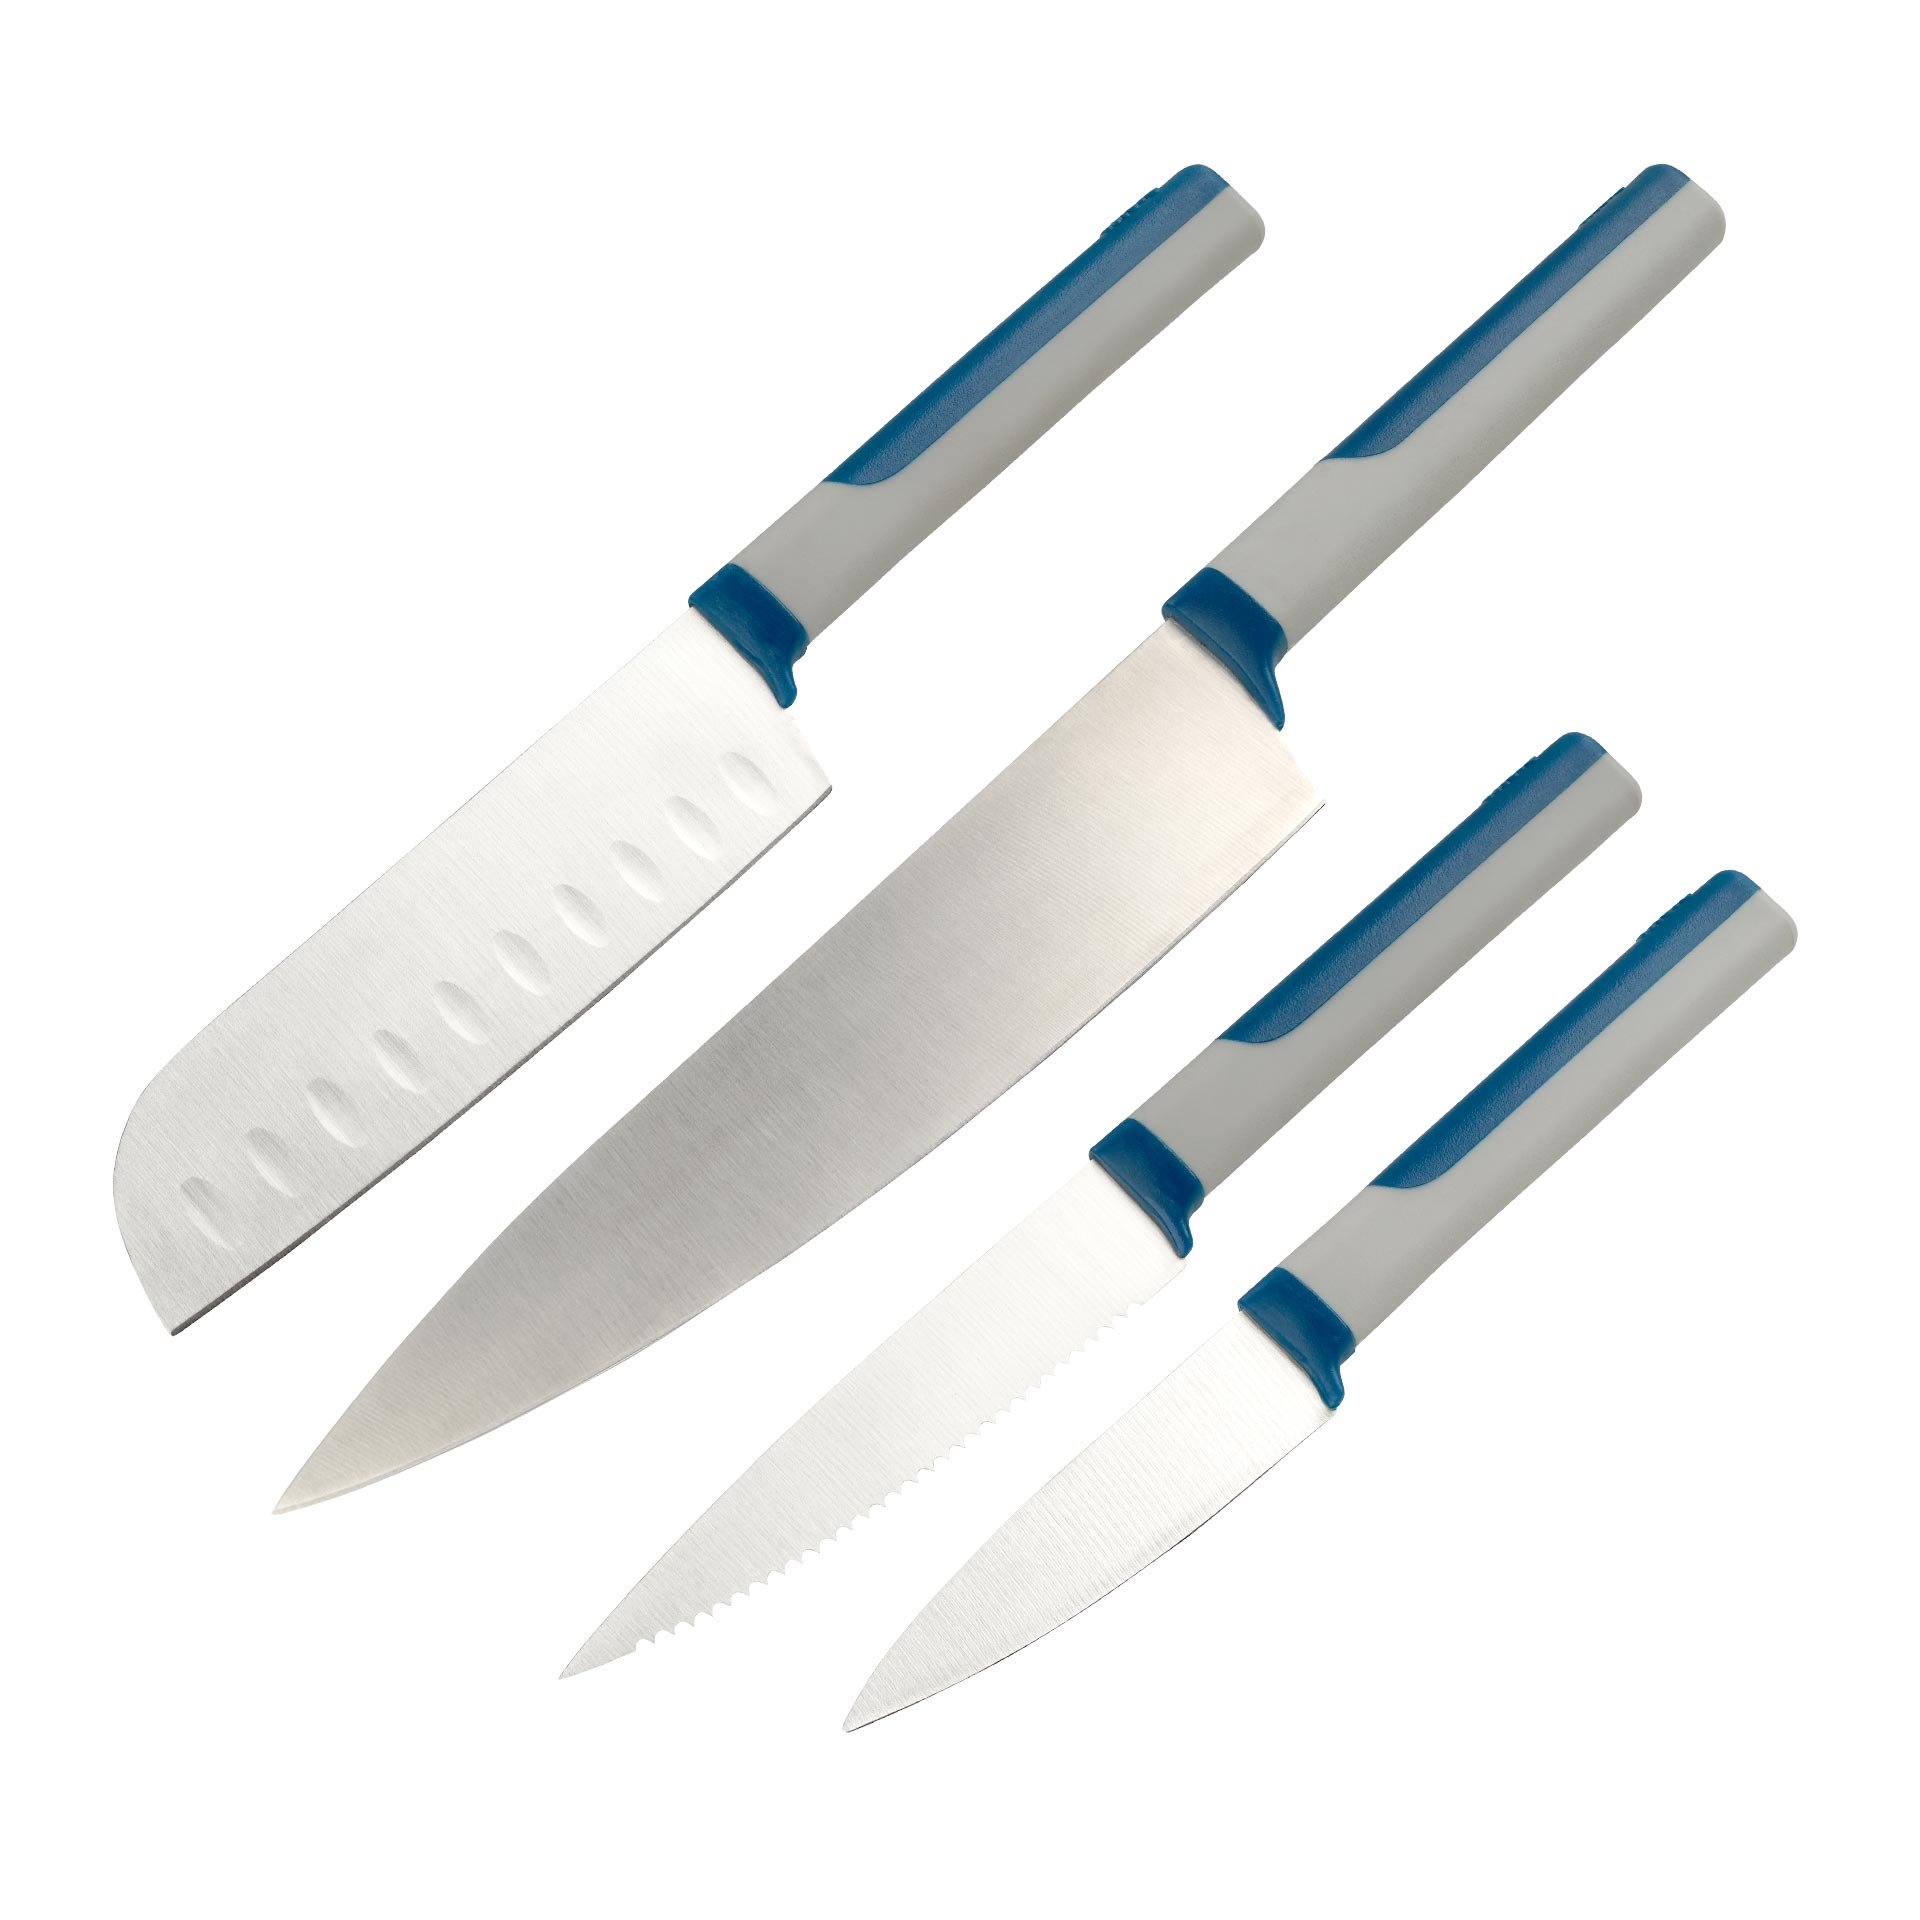 Juego de Cuchillos de Cocina Tasty en Azul, 4 Piezas – Cuchillo Patatero, Cuchillo de Sierra, Cuchillo Santoku y Cuchillo de Chef para una Variedad de Usos